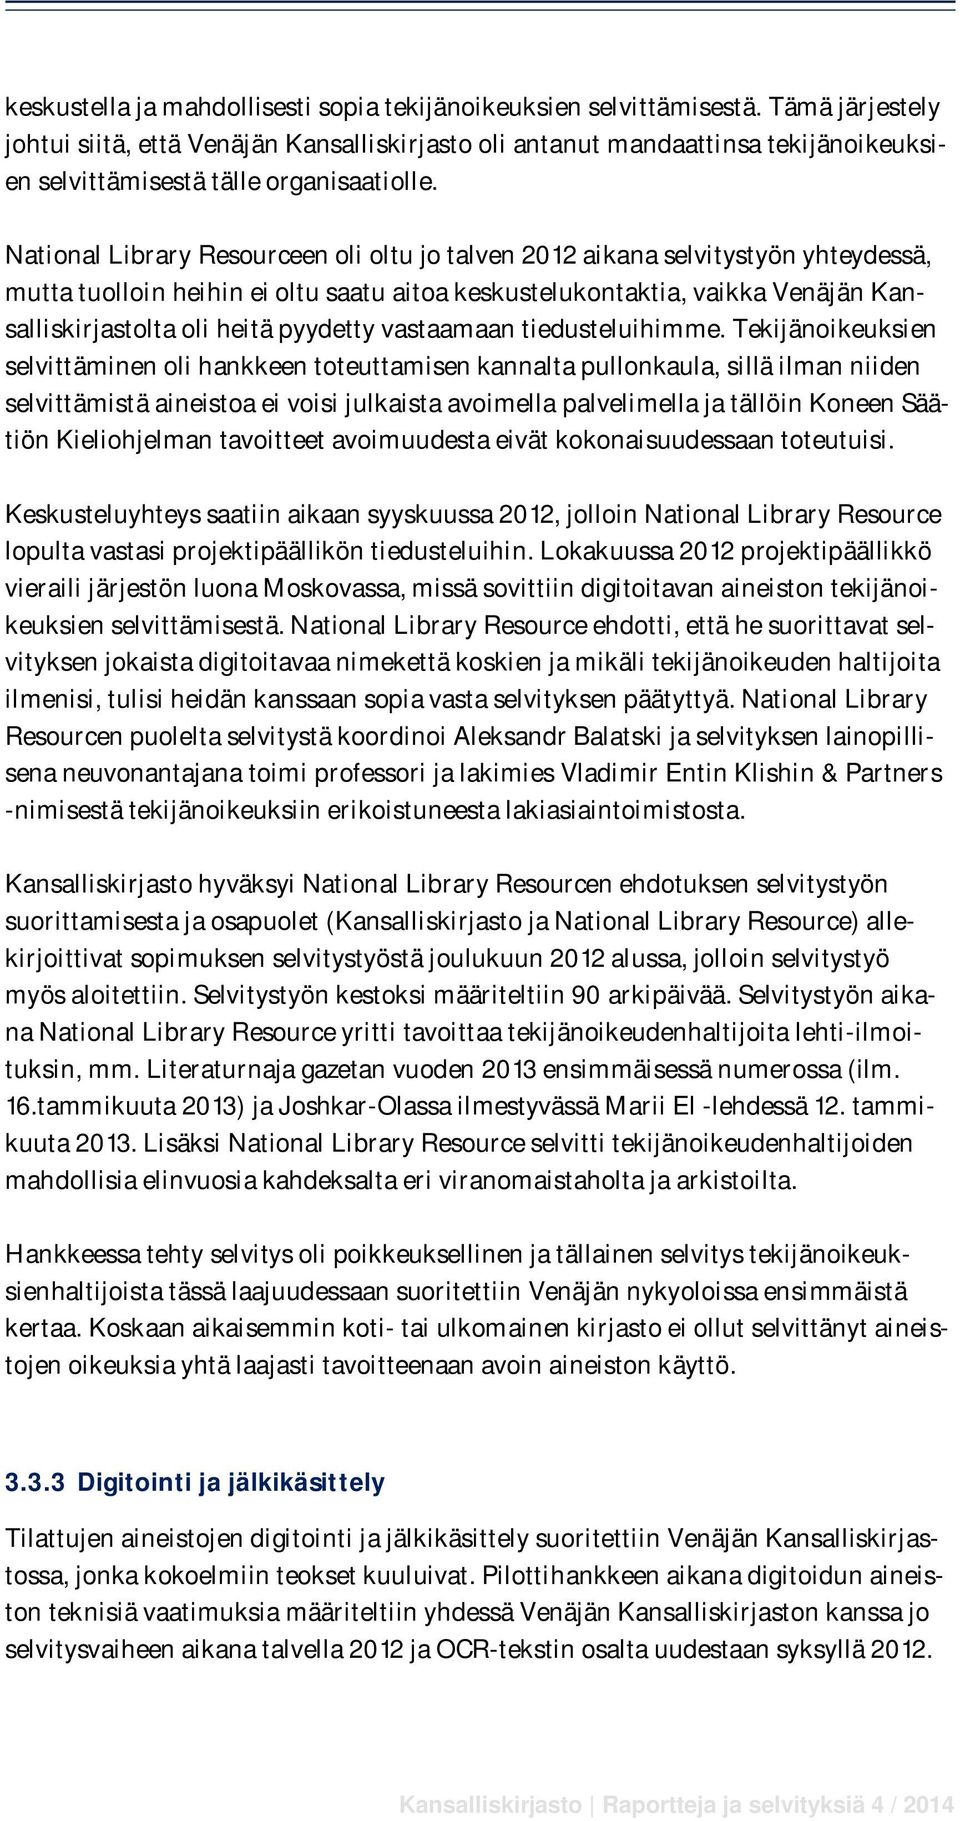 National Library Resourceen oli oltu jo talven 2012 aikana selvitystyön yhteydessä, mutta tuolloin heihin ei oltu saatu aitoa keskustelukontaktia, vaikka Venäjän Kansalliskirjastolta oli heitä